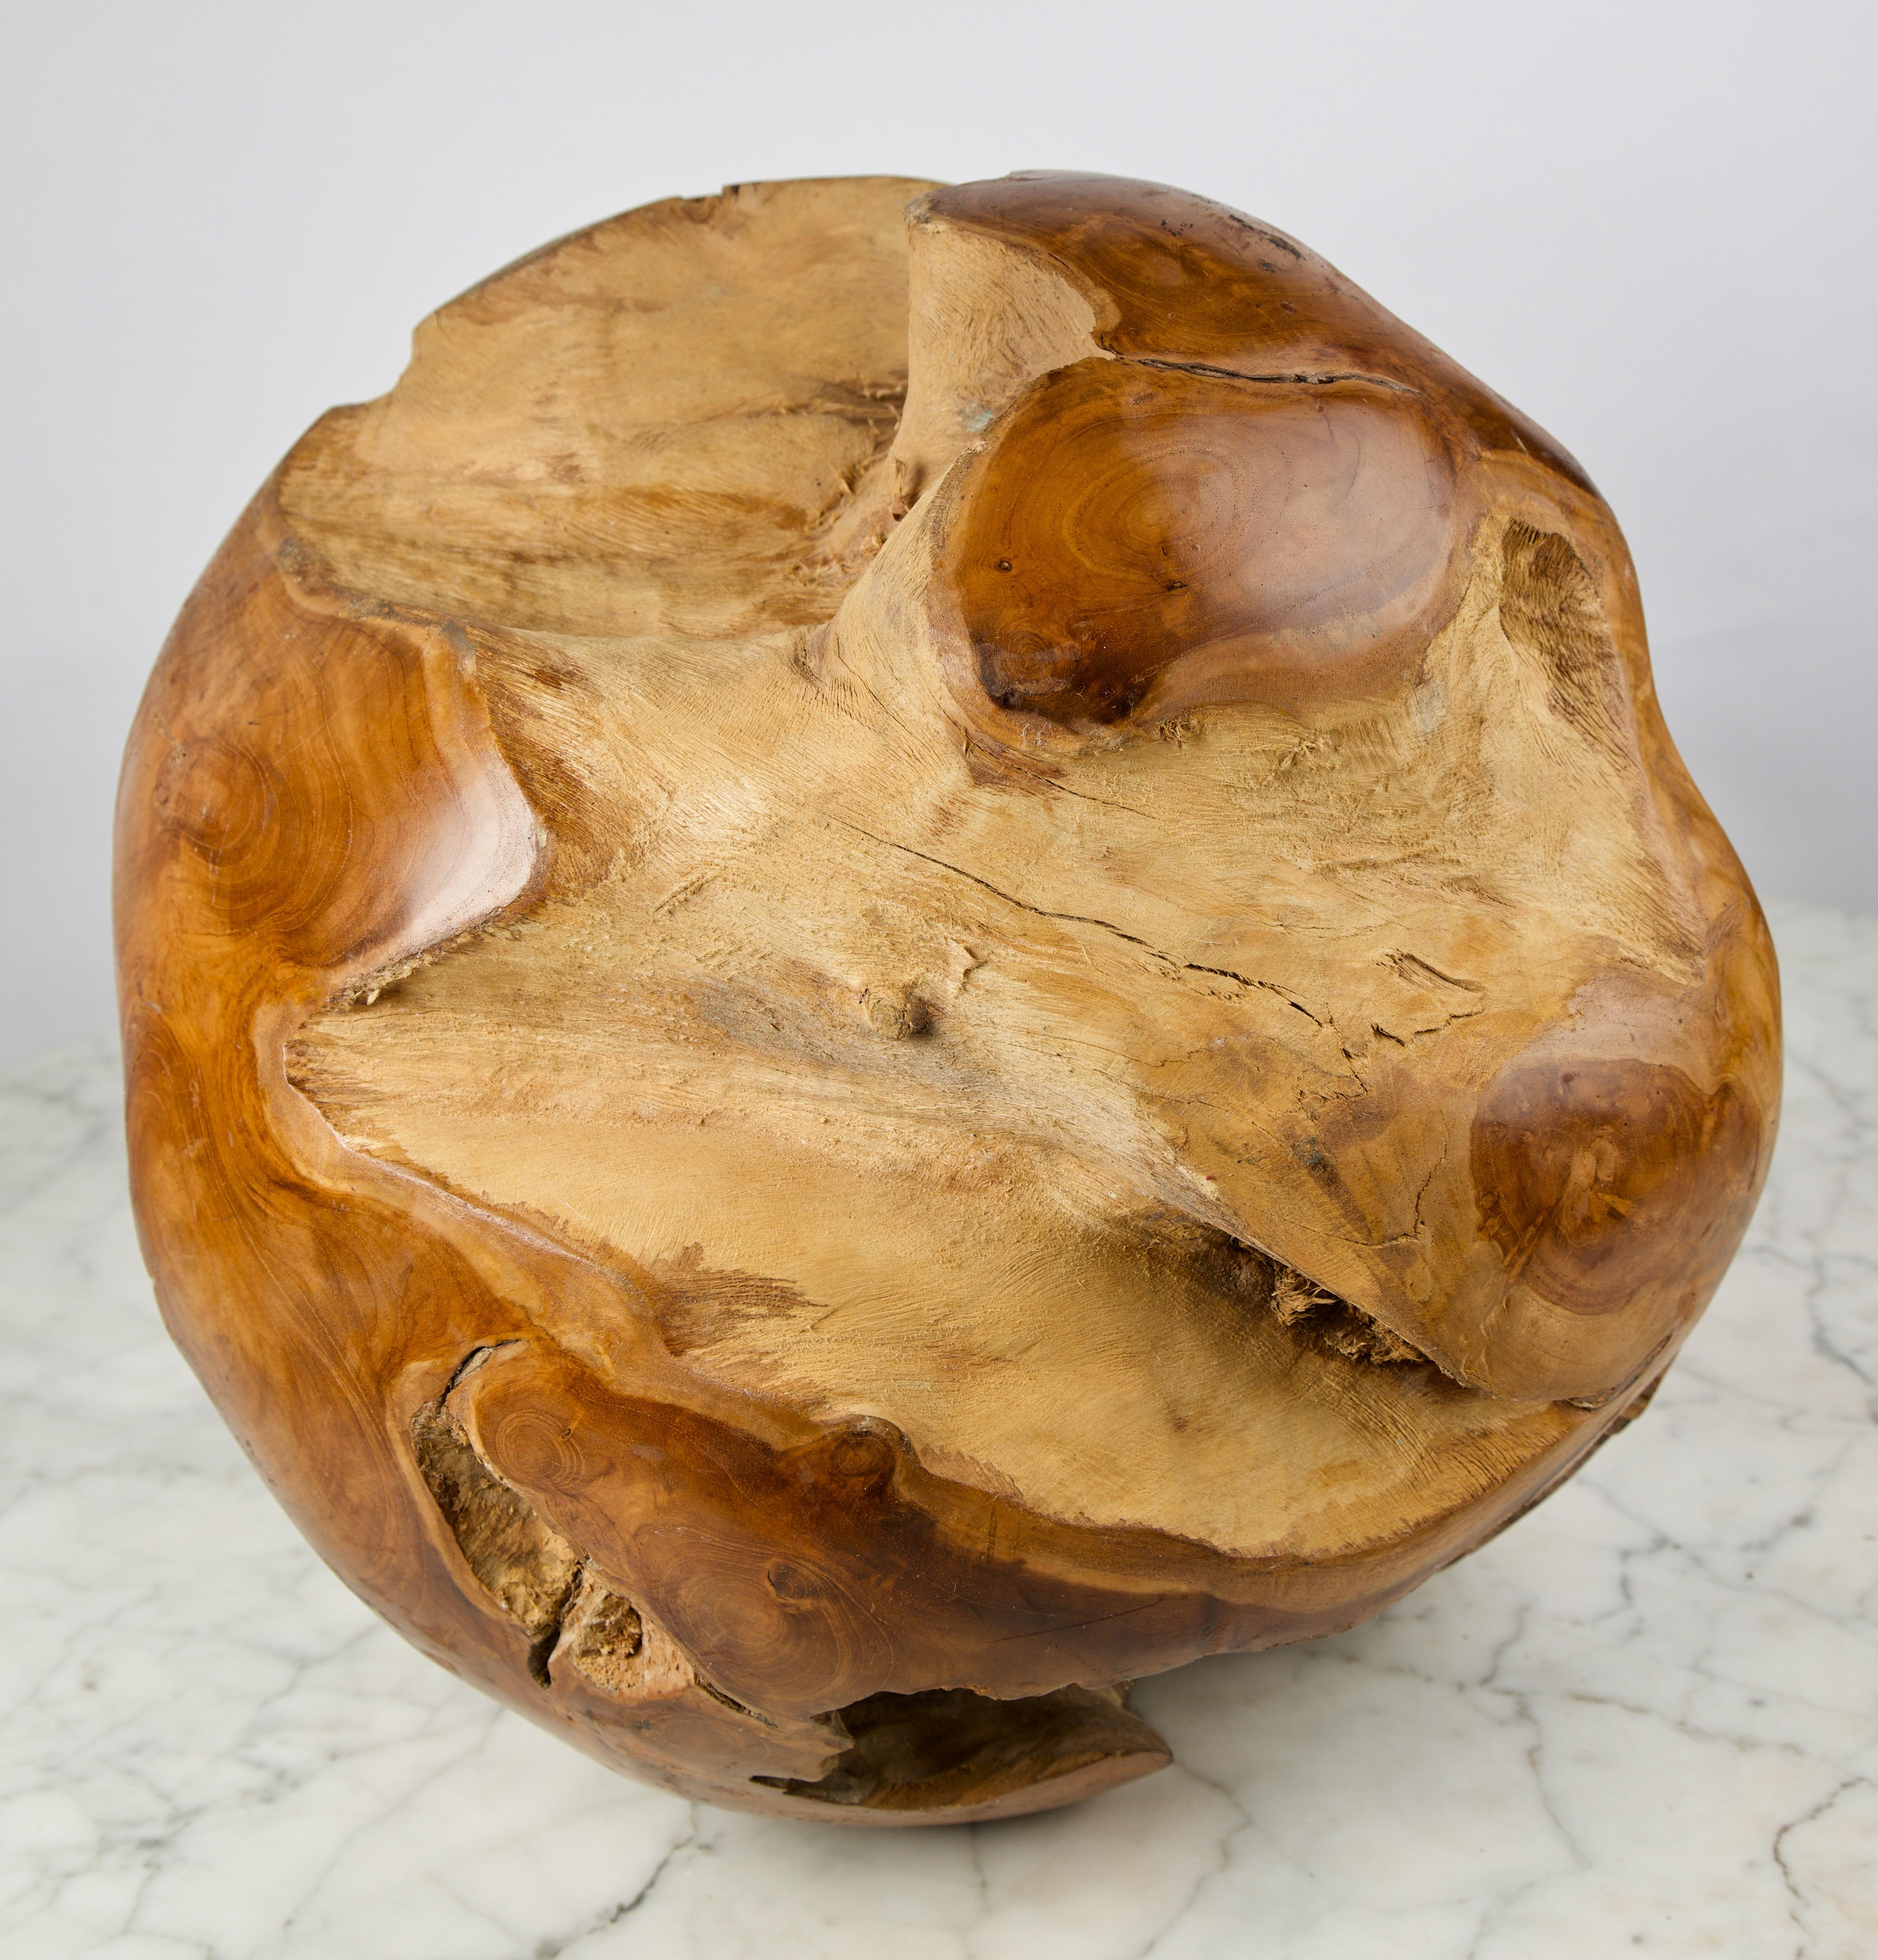 Diese Skulptur ist eine handgeschnitzte Wurzelkugel aus naturbelassenem Teakholz. Der äußere Teil ist poliert, die innere Wurzel bleibt dagegen unberührt. Durch das Belassen der scharfen Kante erhält die Innenfläche des Balls eine einzigartige